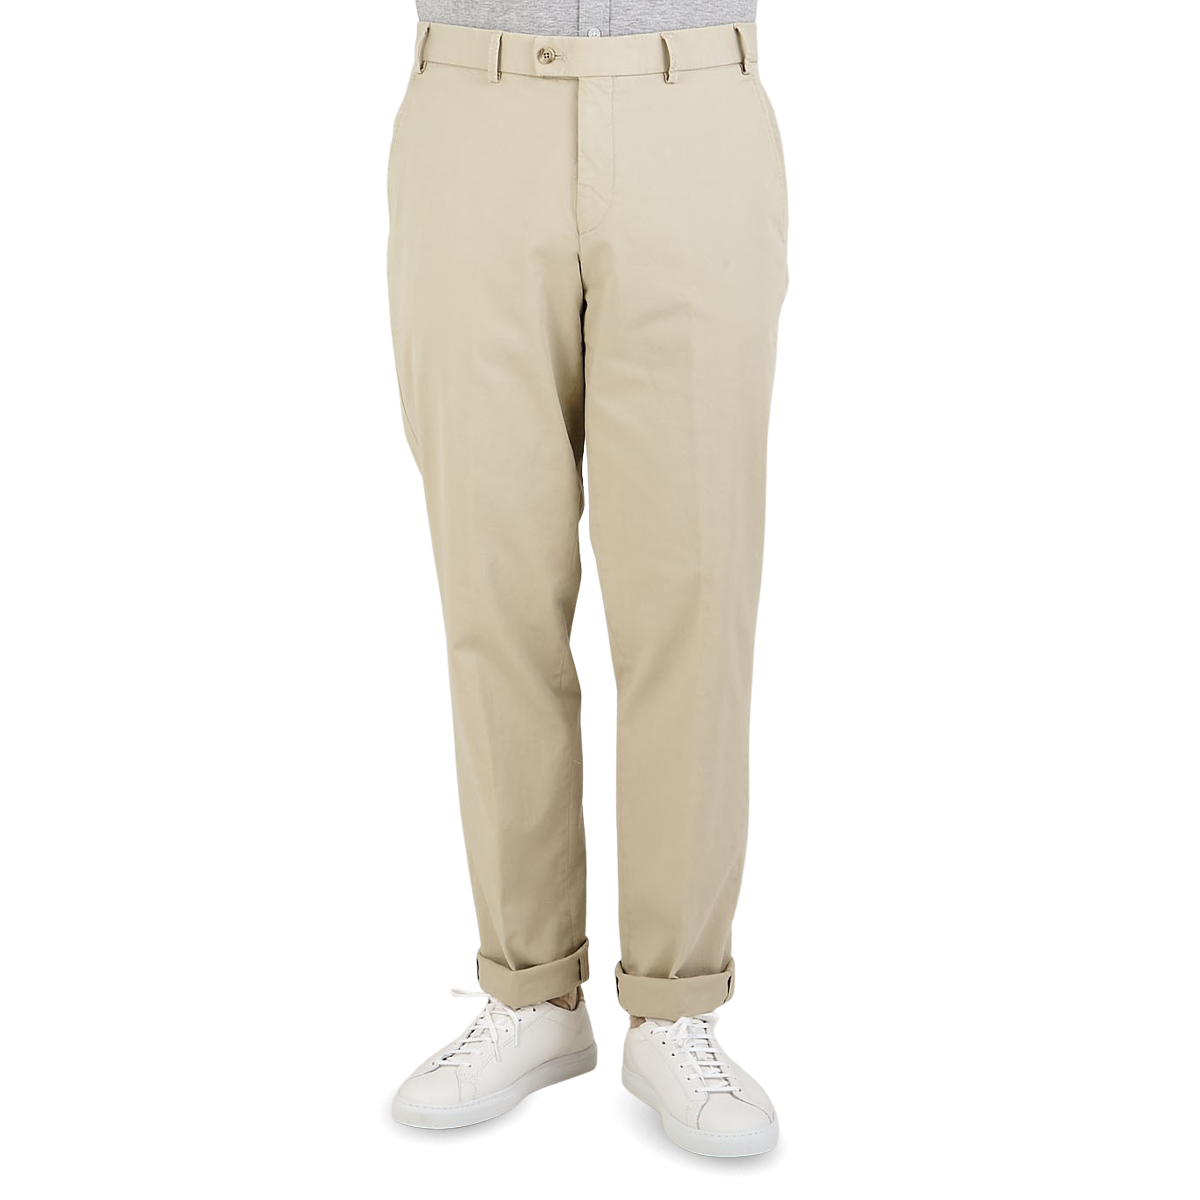 Pantalones Strech Regular Fit, NUEVO